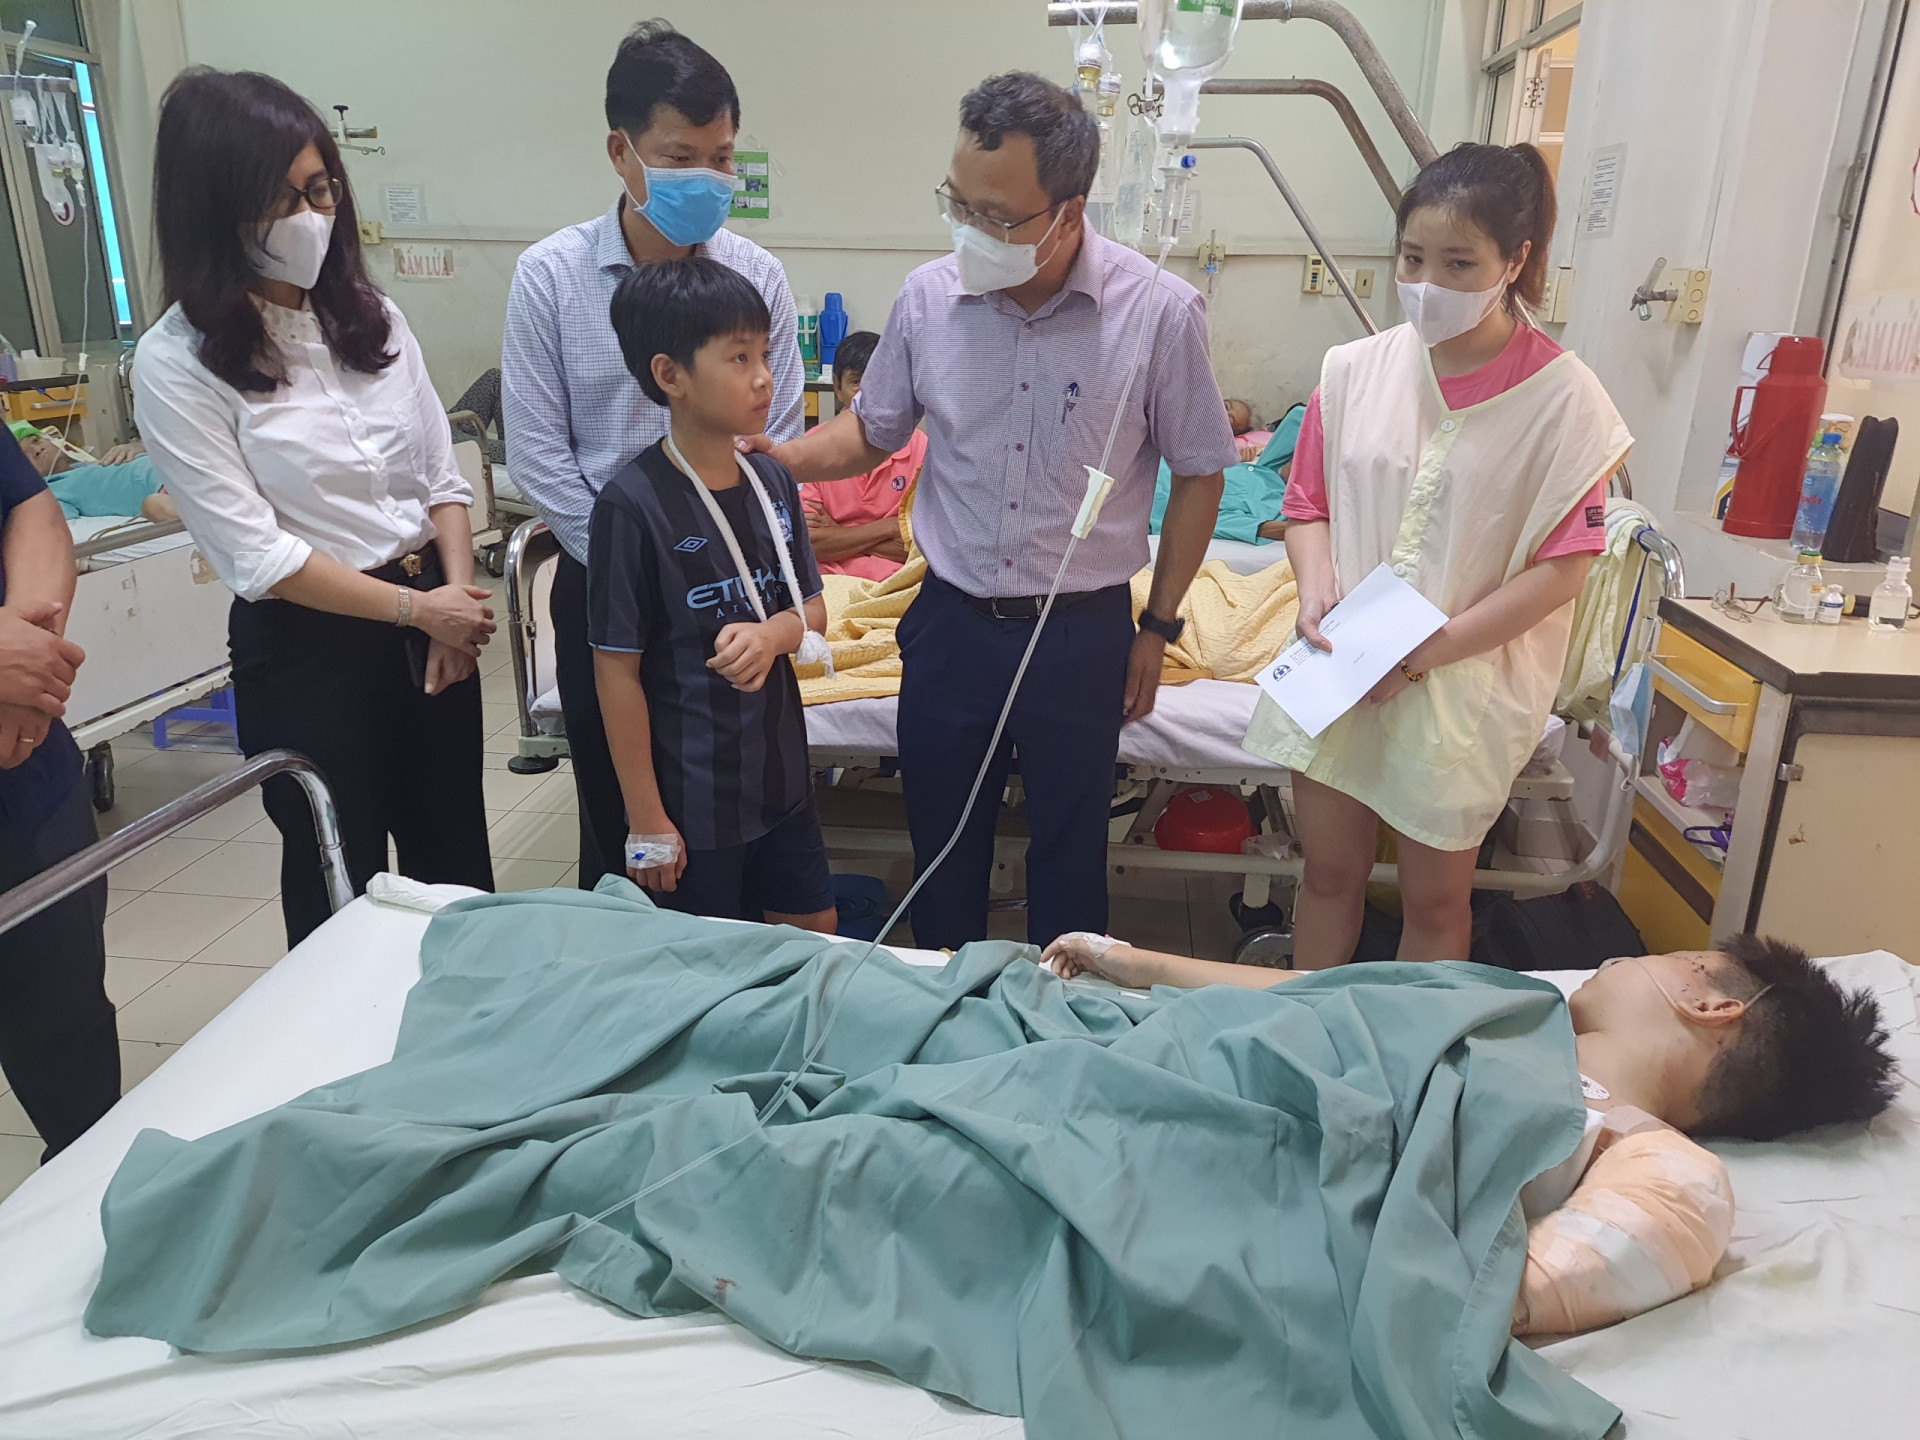 Đoàn công tác do ông Khuất Việt Hùng dẫn đầu đã đi thăm, động viên các nạn nhân trong vụ tai nạn giao thông.